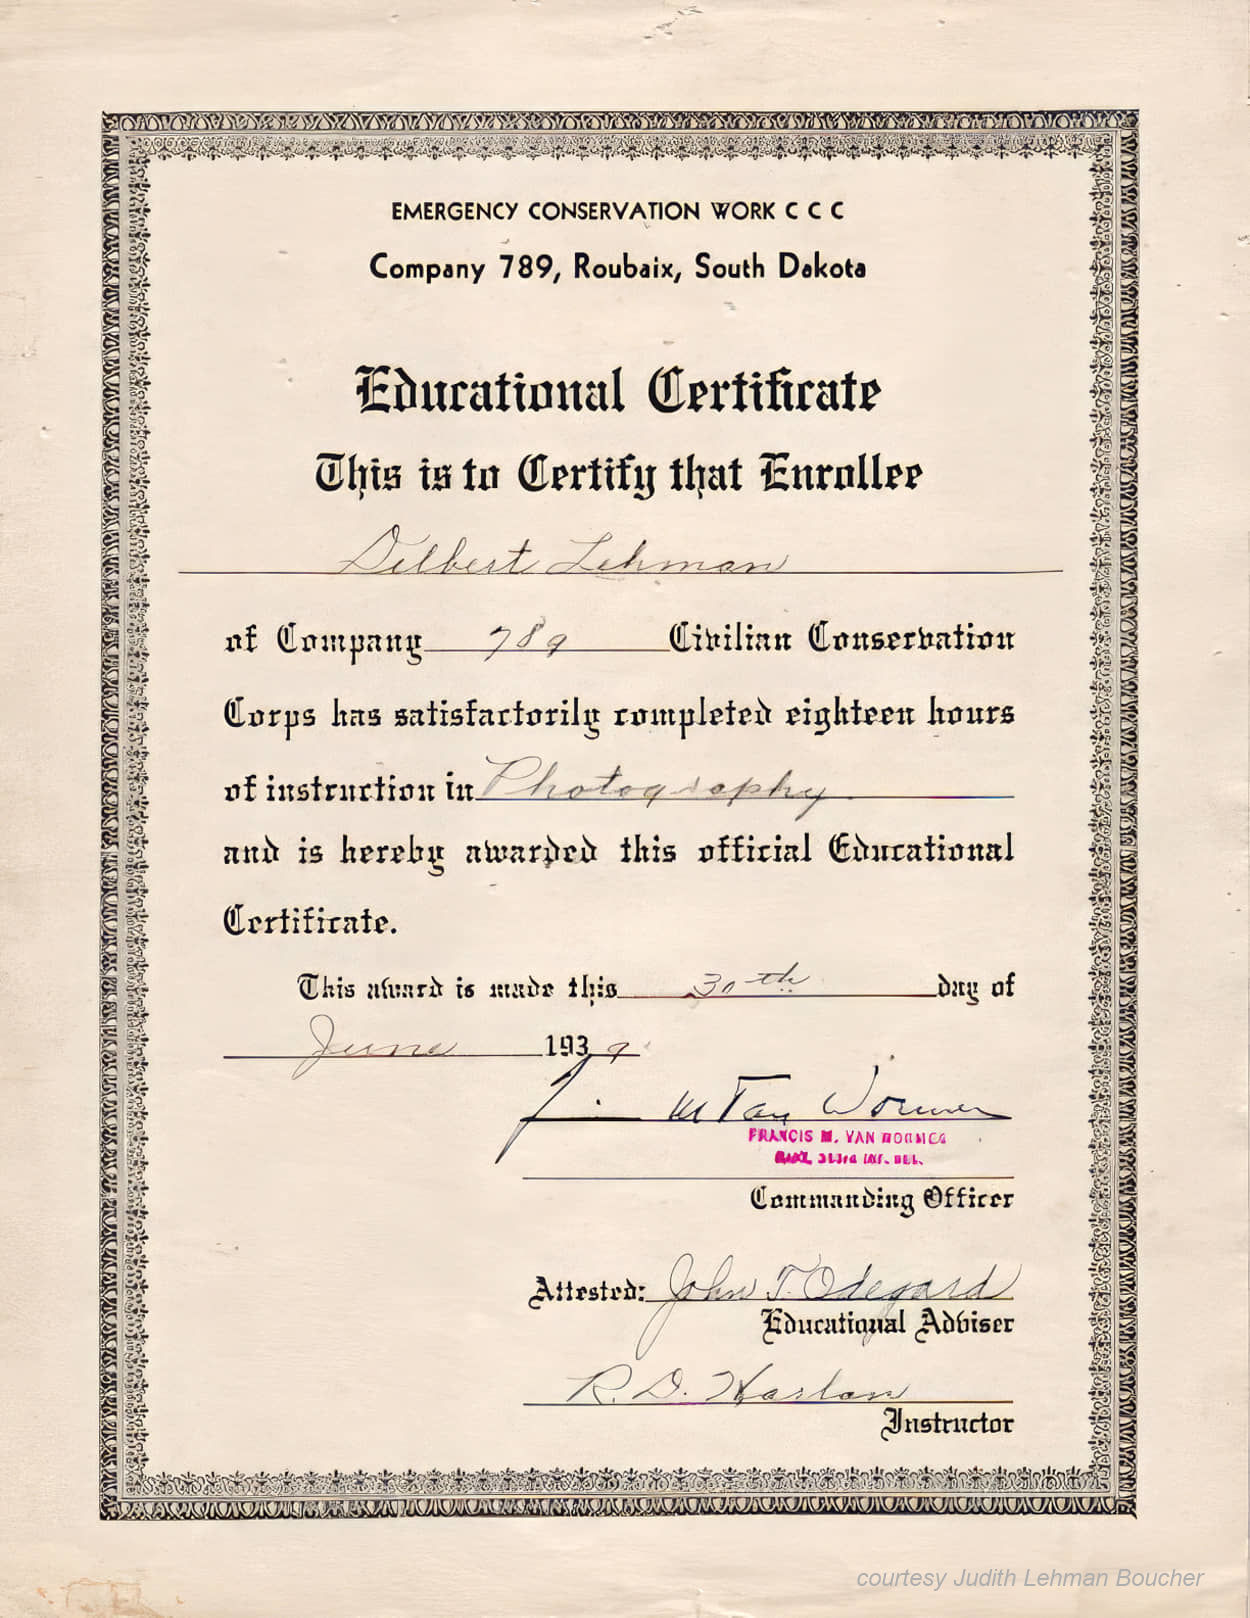 Delbert Lehman Photography Certificate